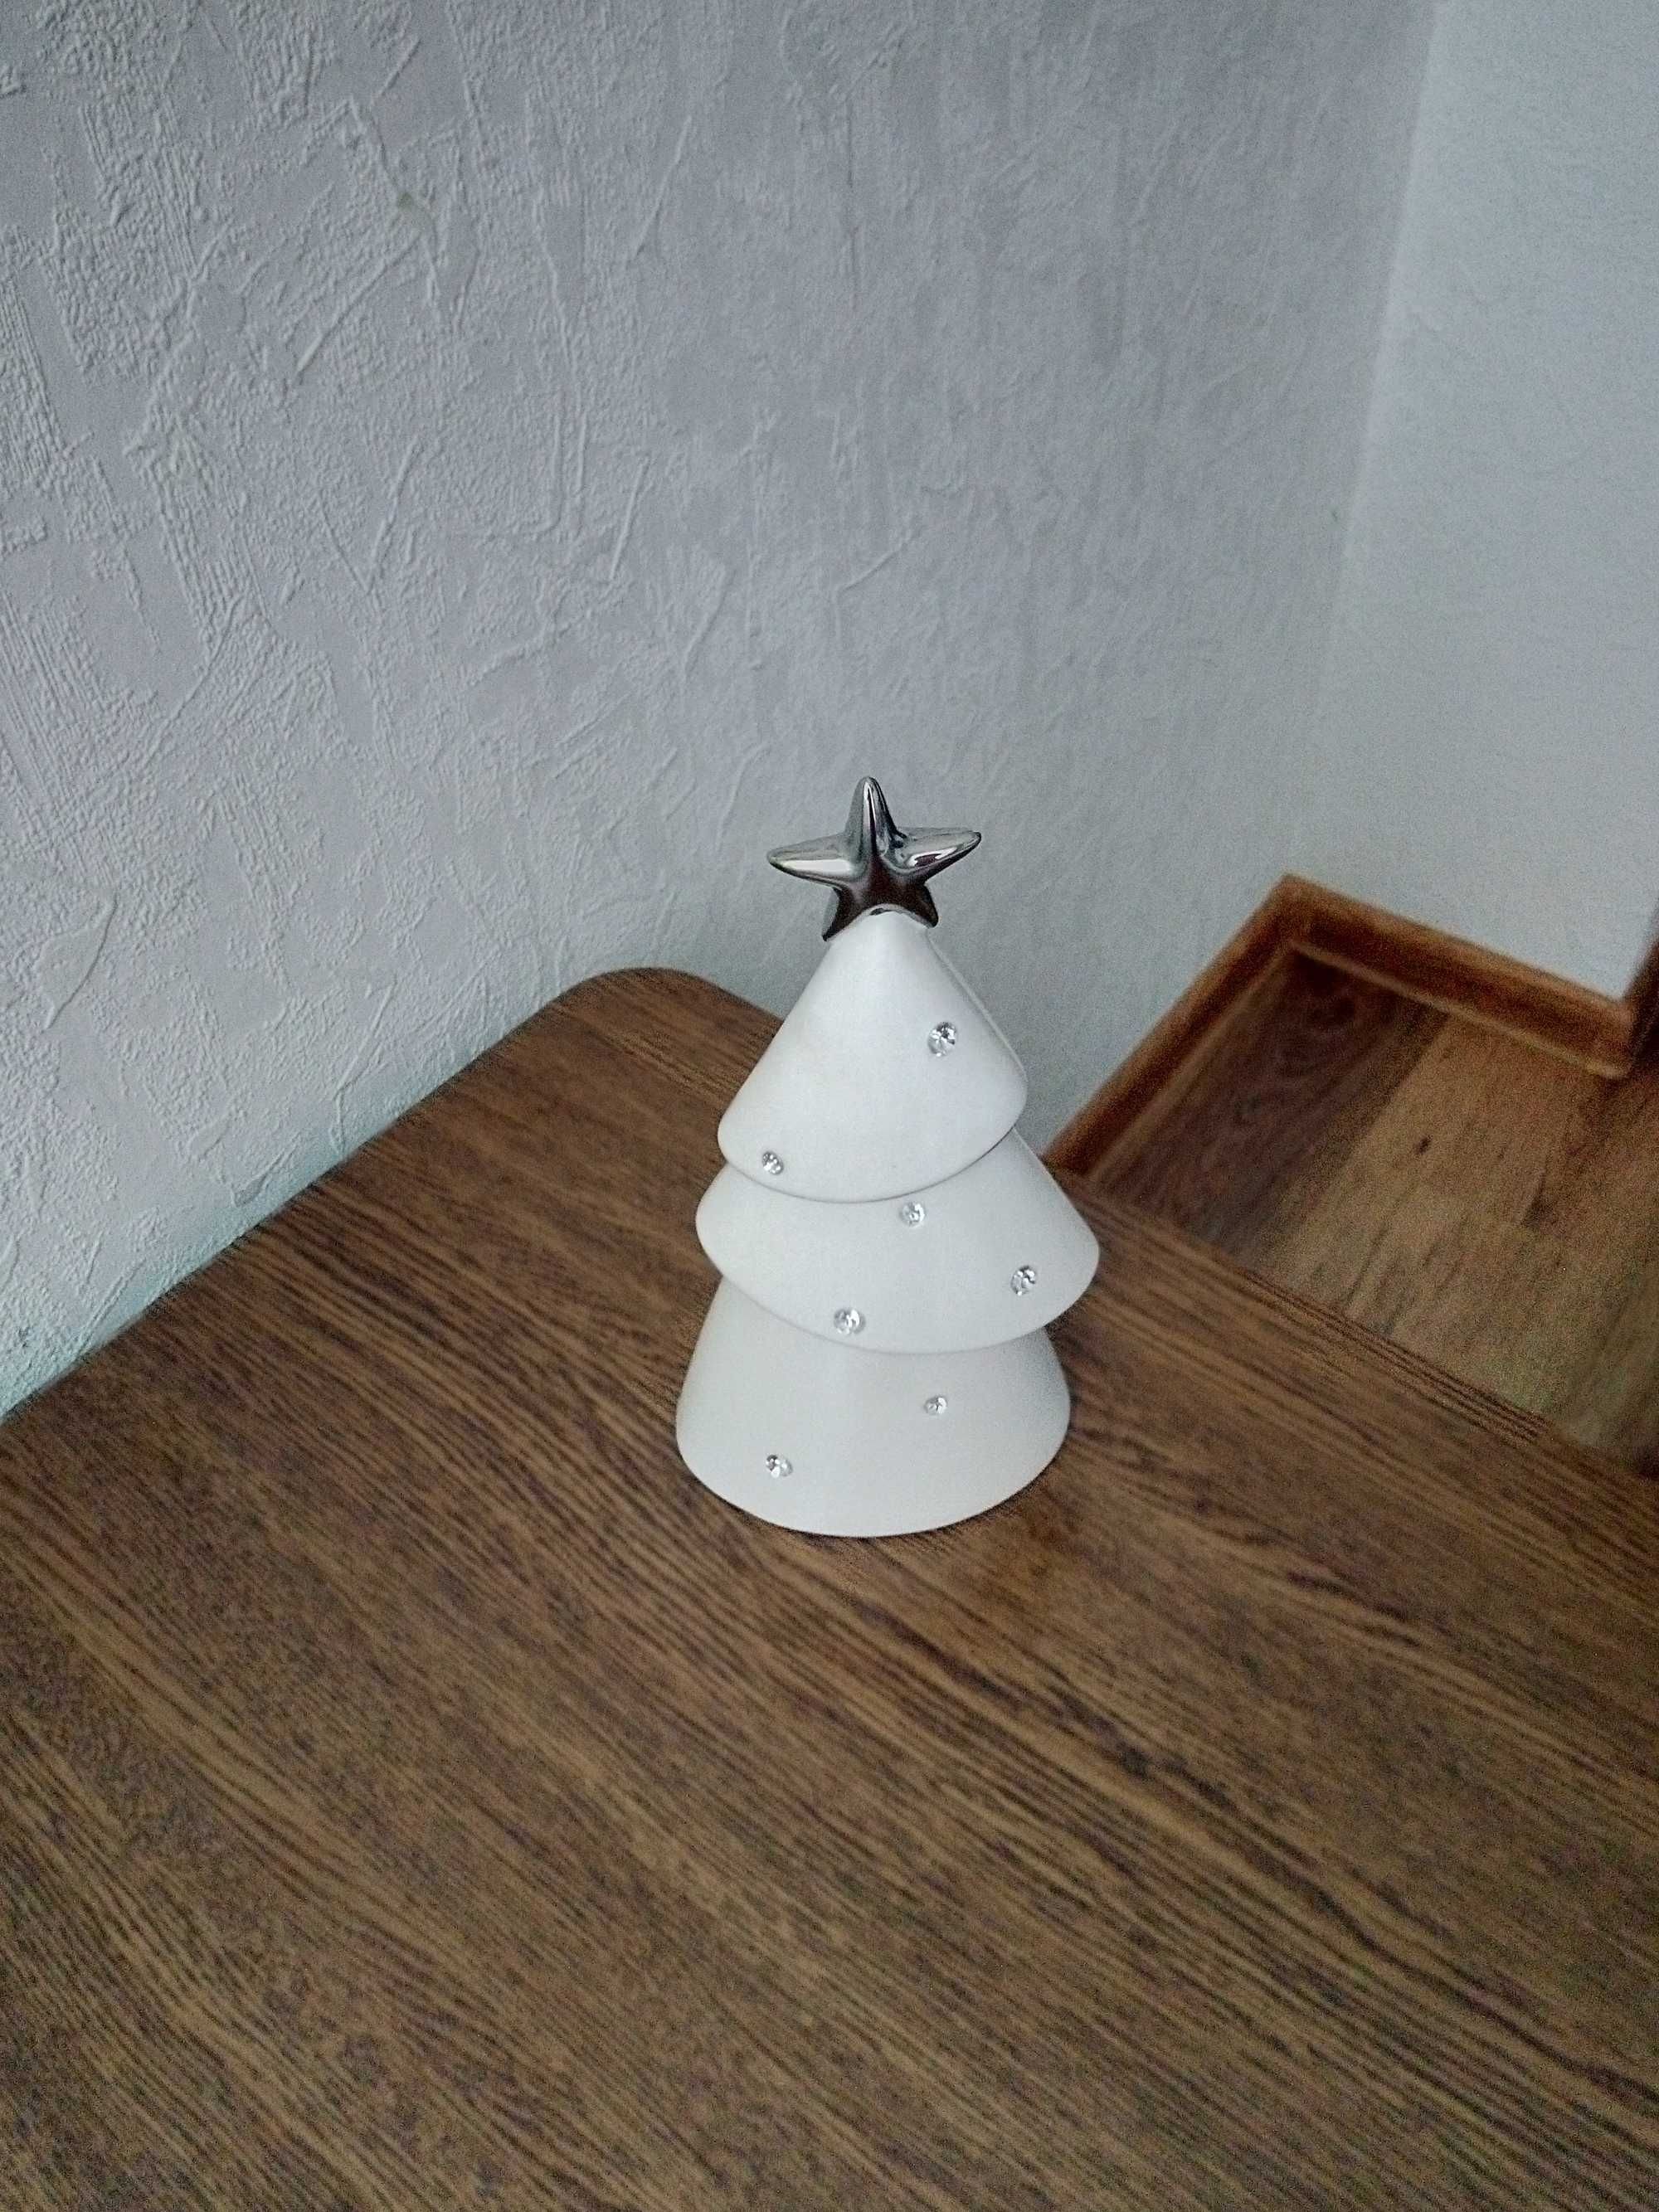 dekoracja świąteczna ceramiczna choinka 20cm/ home end you/